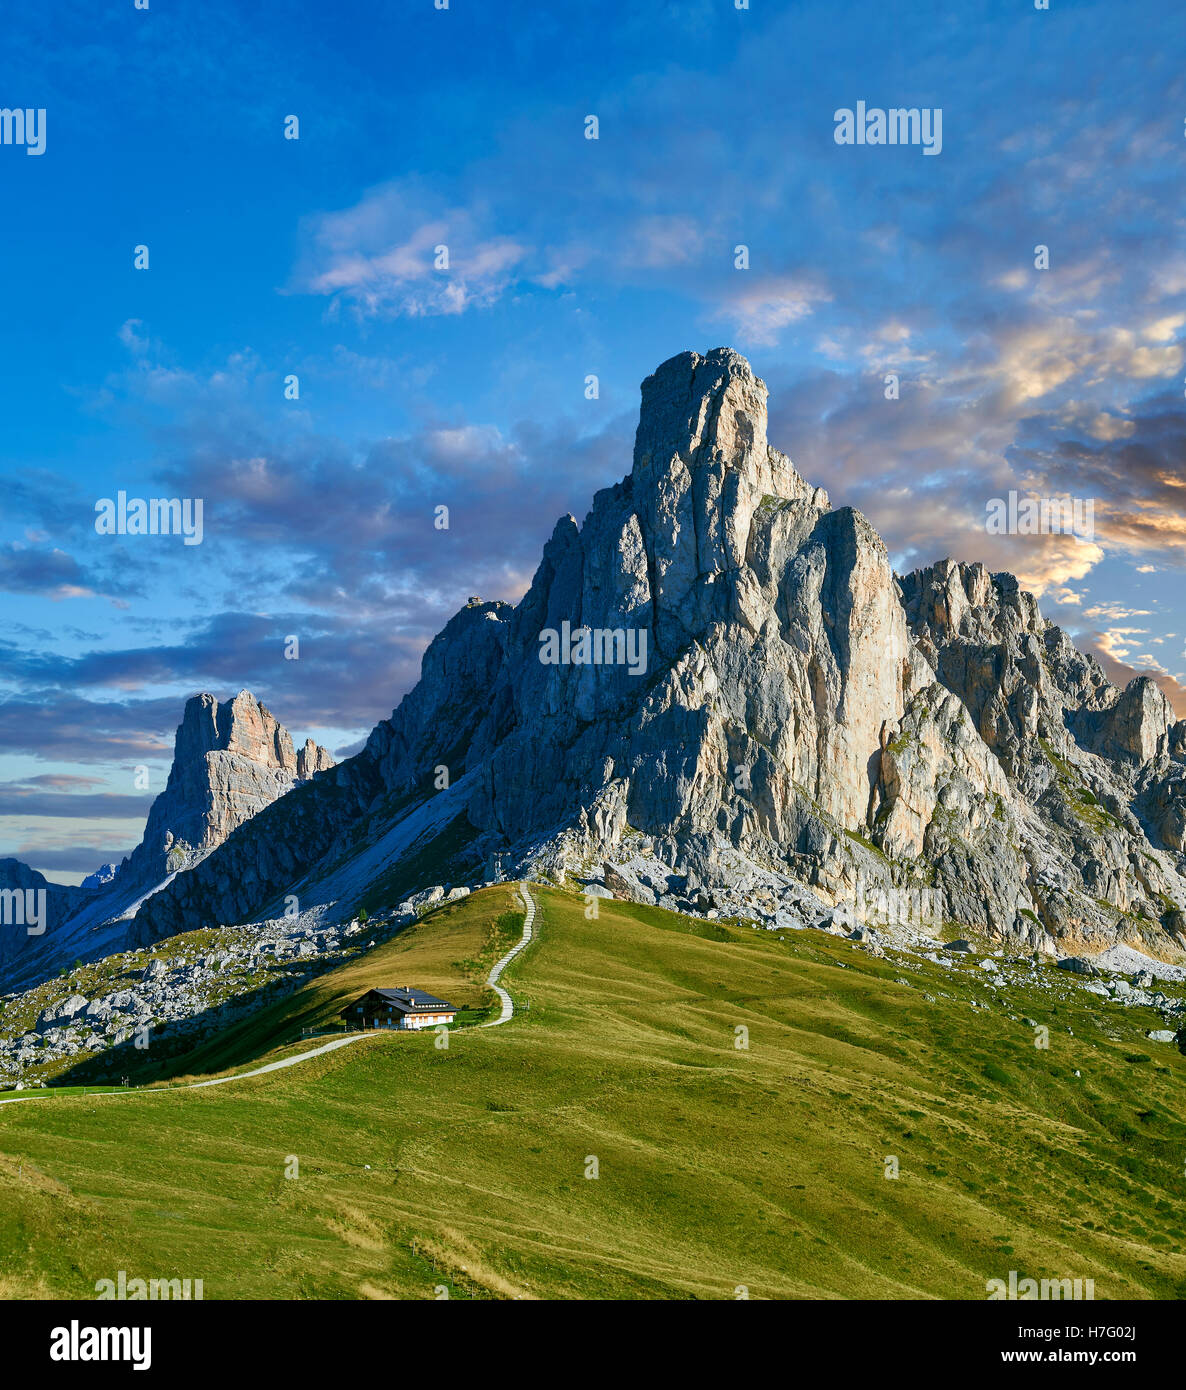 Nuvolau  mountain above the Giau Pass (Passo di Giau), Colle Santa Lucia, Dolomites, Belluno, Italy Stock Photo